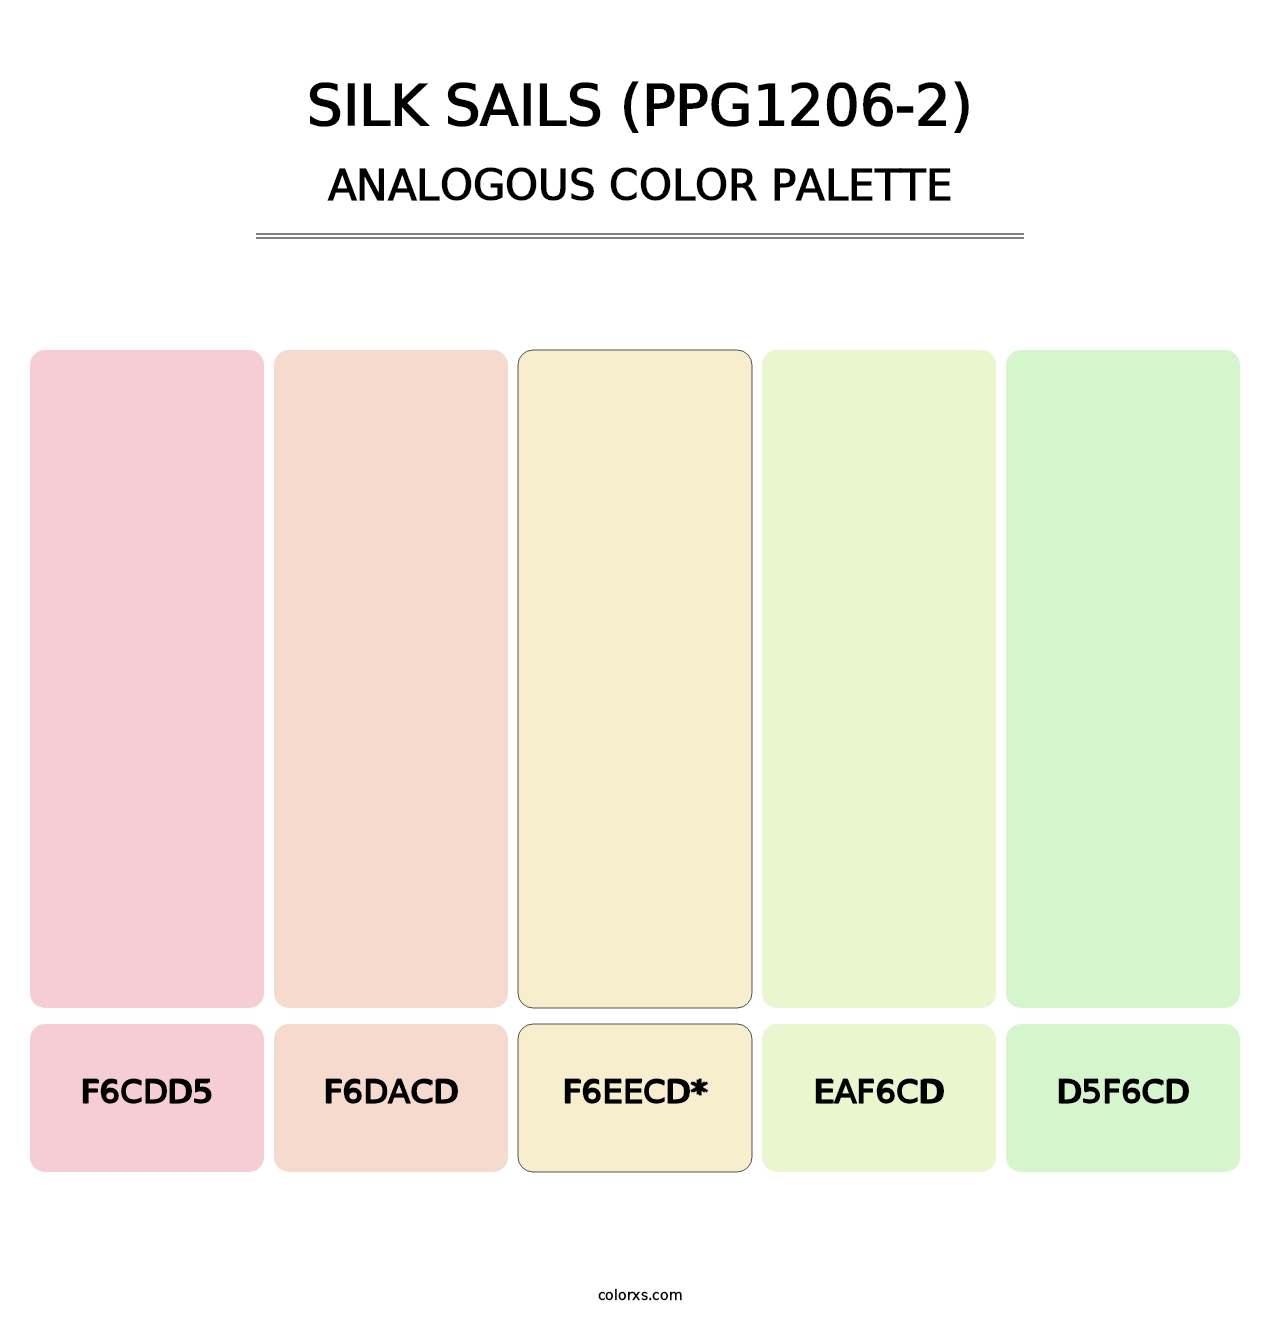 Silk Sails (PPG1206-2) - Analogous Color Palette